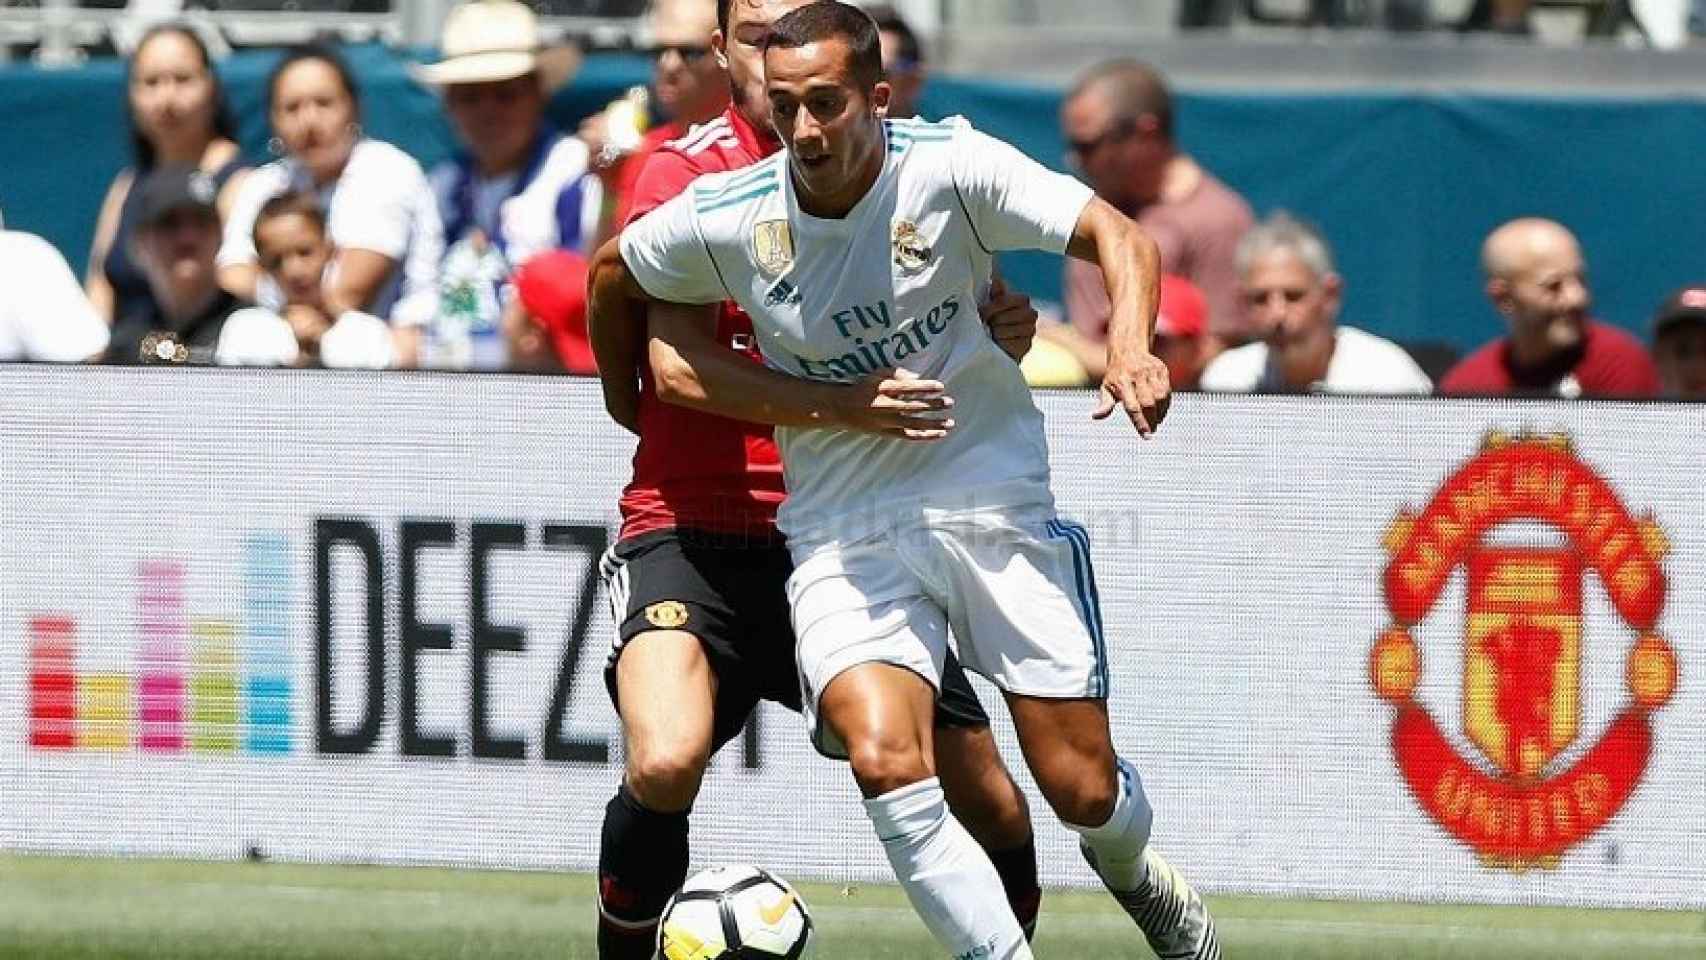 Lucas se lleva el balón frente a la defensa del United